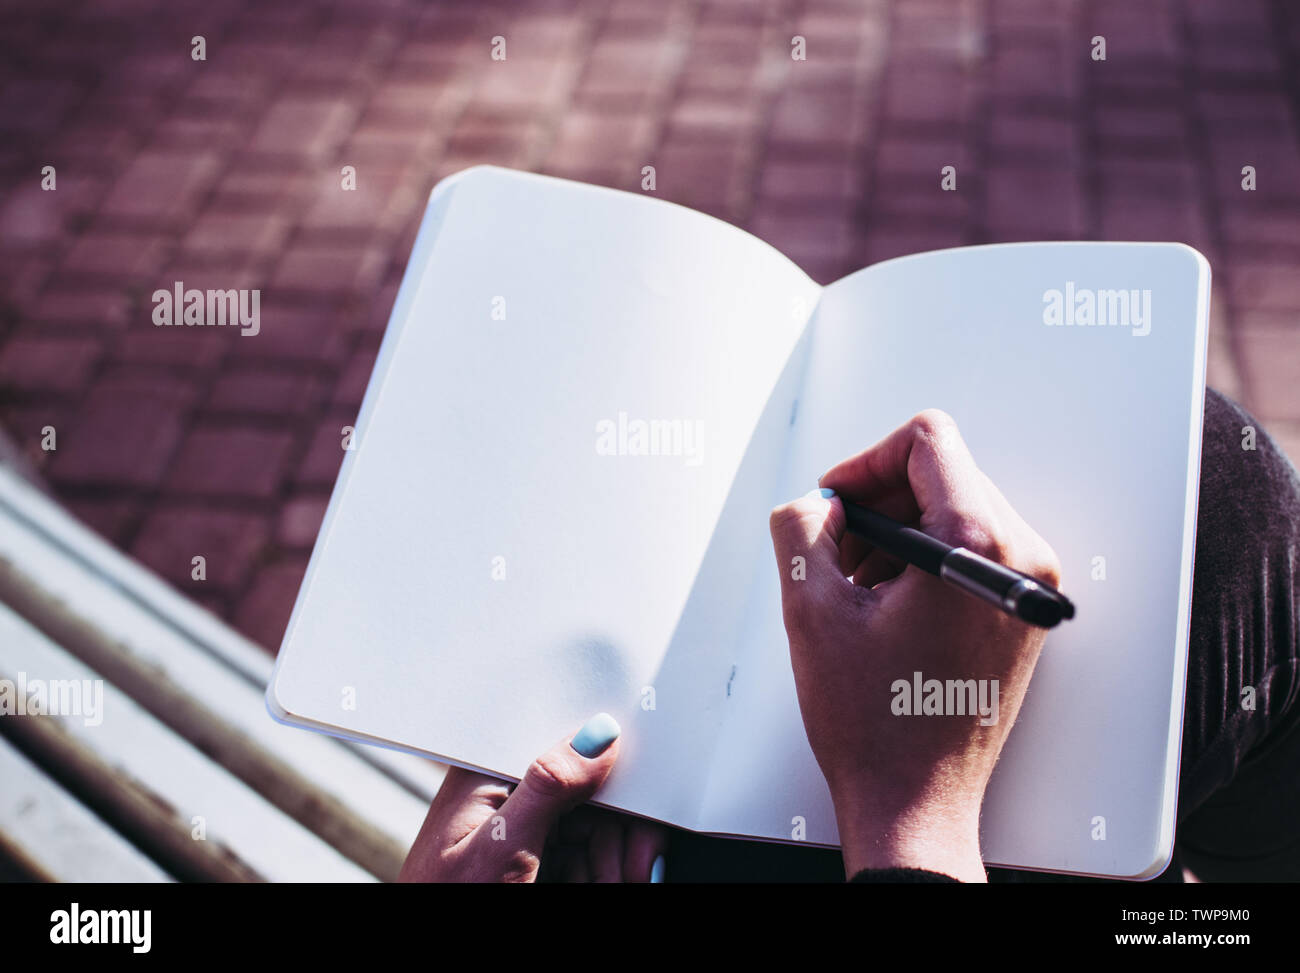 Close-up de pages vierges d'un ordinateur portable et la main de la jeune fille en commençant à écrire ses pensées et idées. Concept de travail sur un devoir, essa Banque D'Images